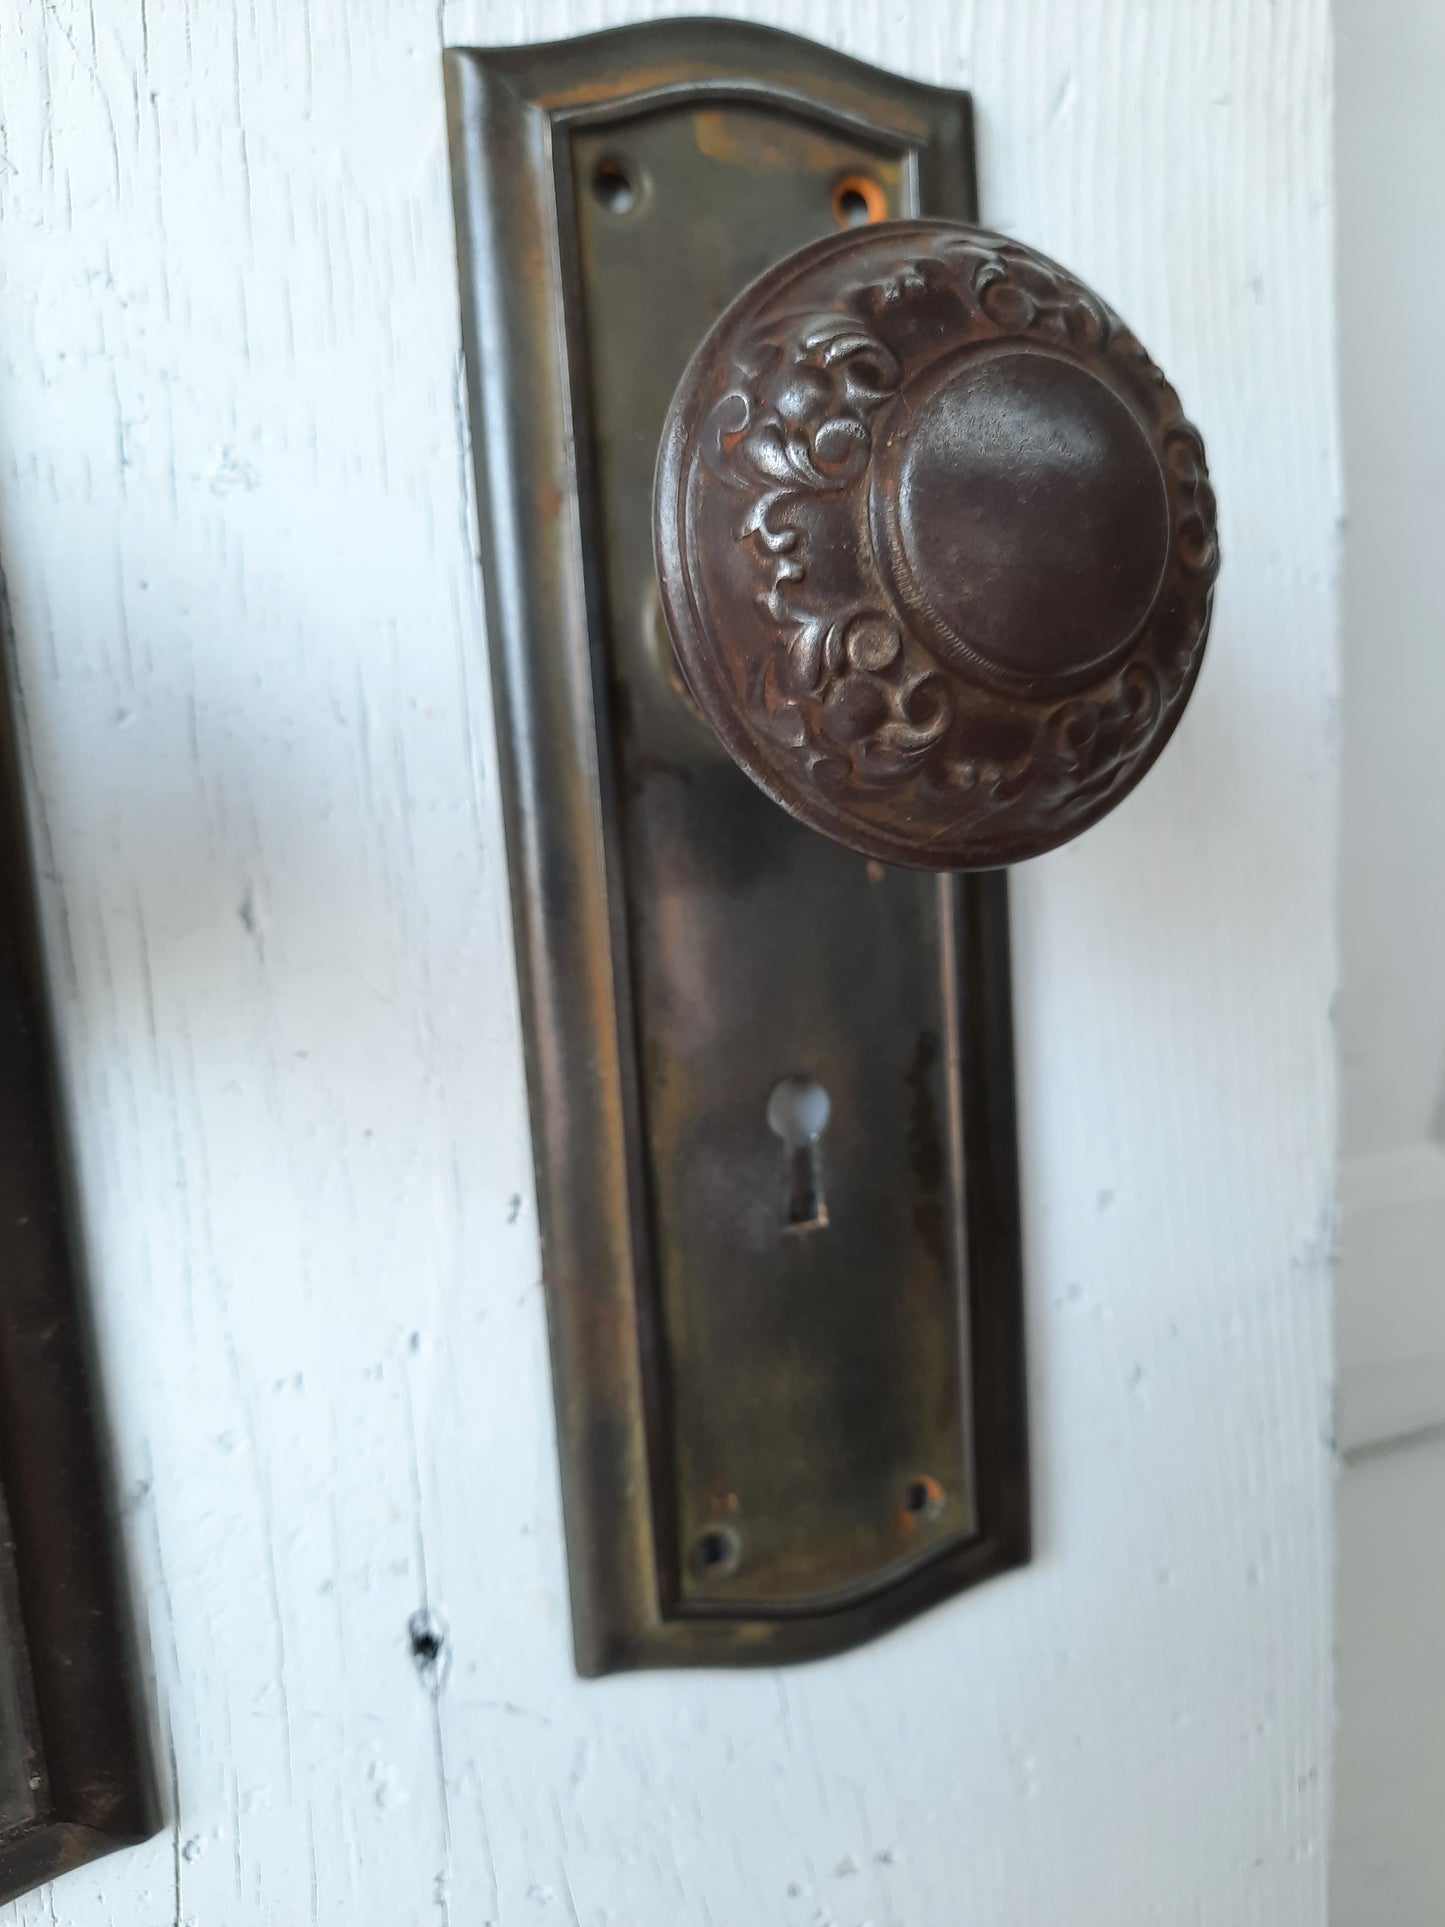 Deco Door Plates with Antique Floral Pattern Doorknobs, Door Backplates and Knob Set, Door Hardware